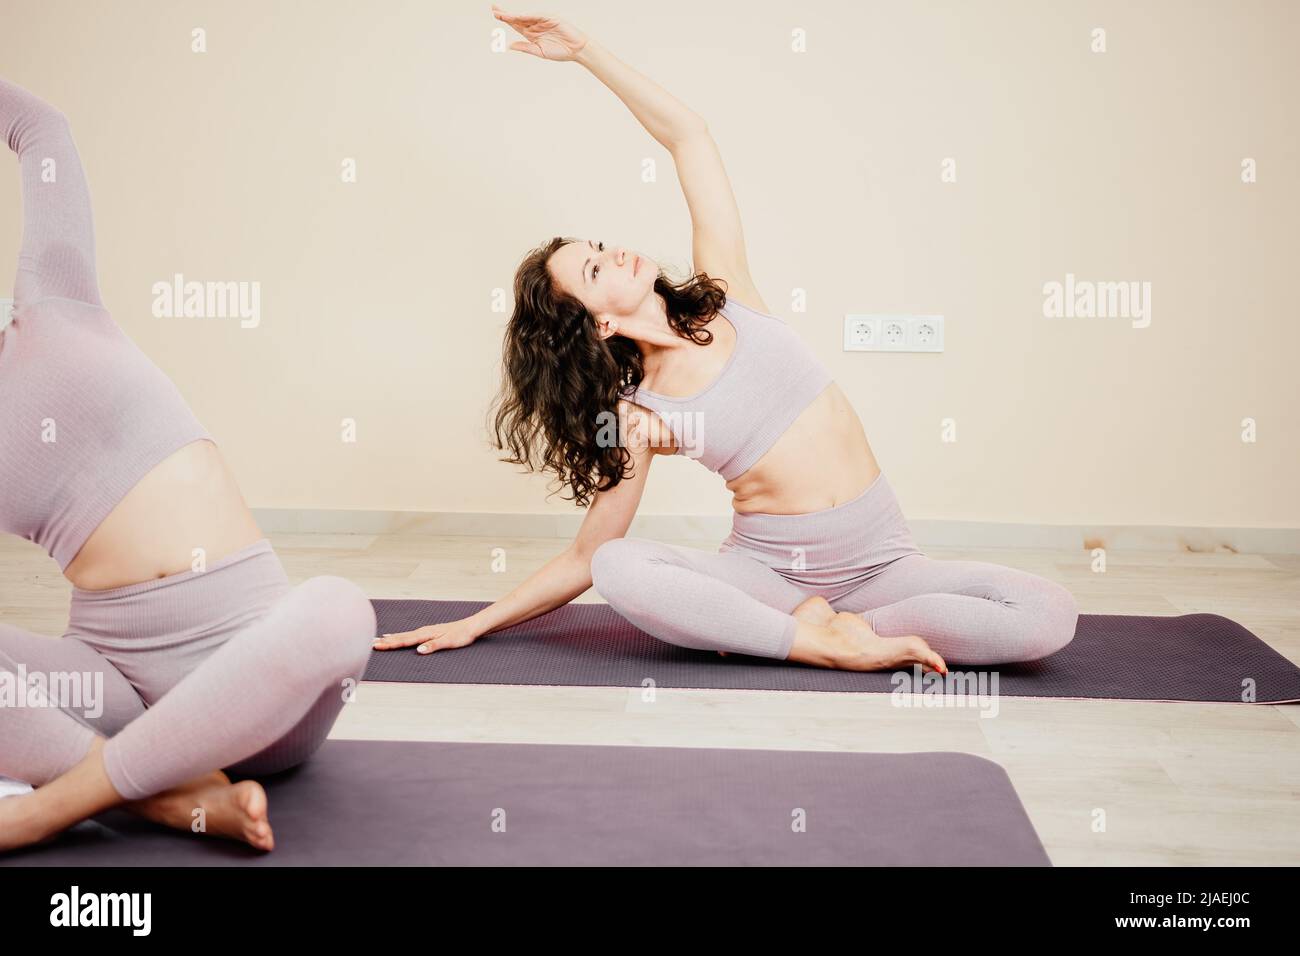 Mujer deportiva de mediana edad, monitor de en ropa deportiva rosa estirando y pilates sobre colchoneta de yoga en el estudio con espejo Fotografía de -